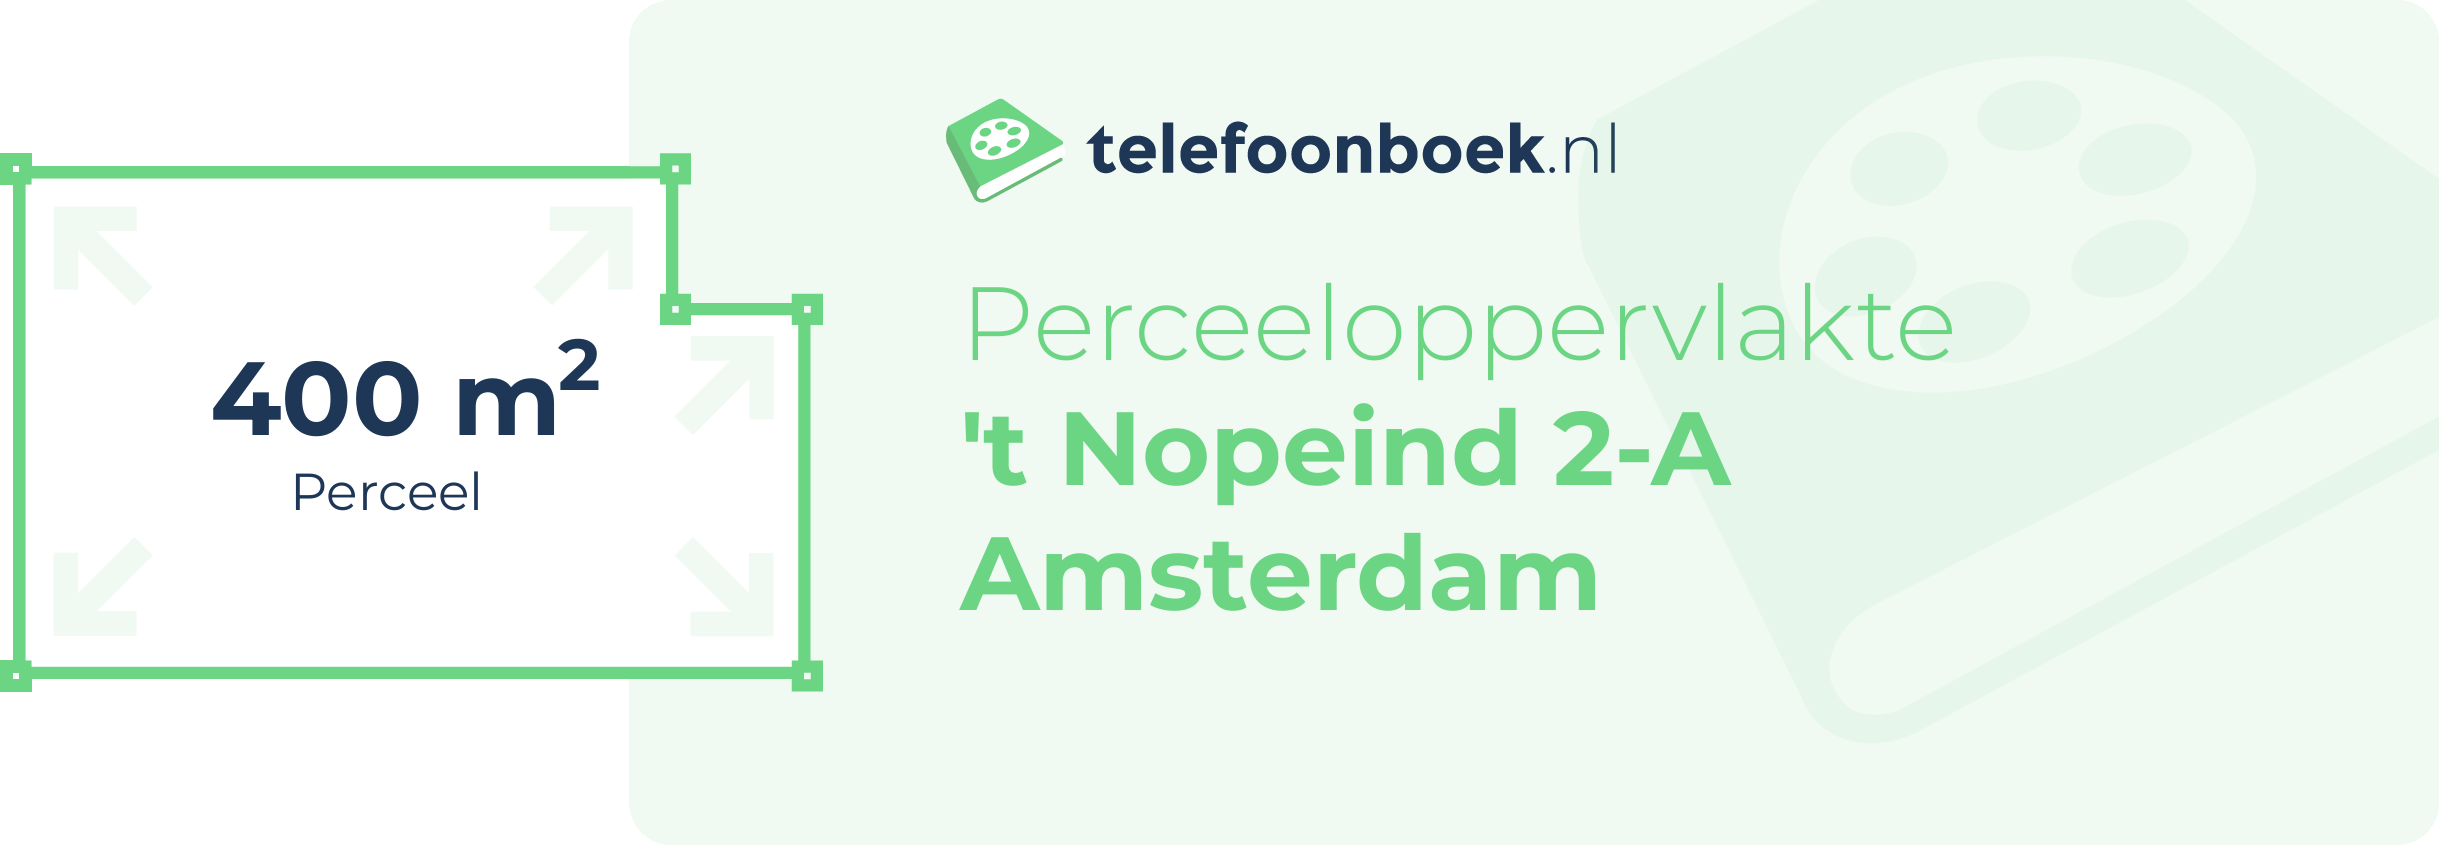 Perceeloppervlakte 't Nopeind 2-A Amsterdam